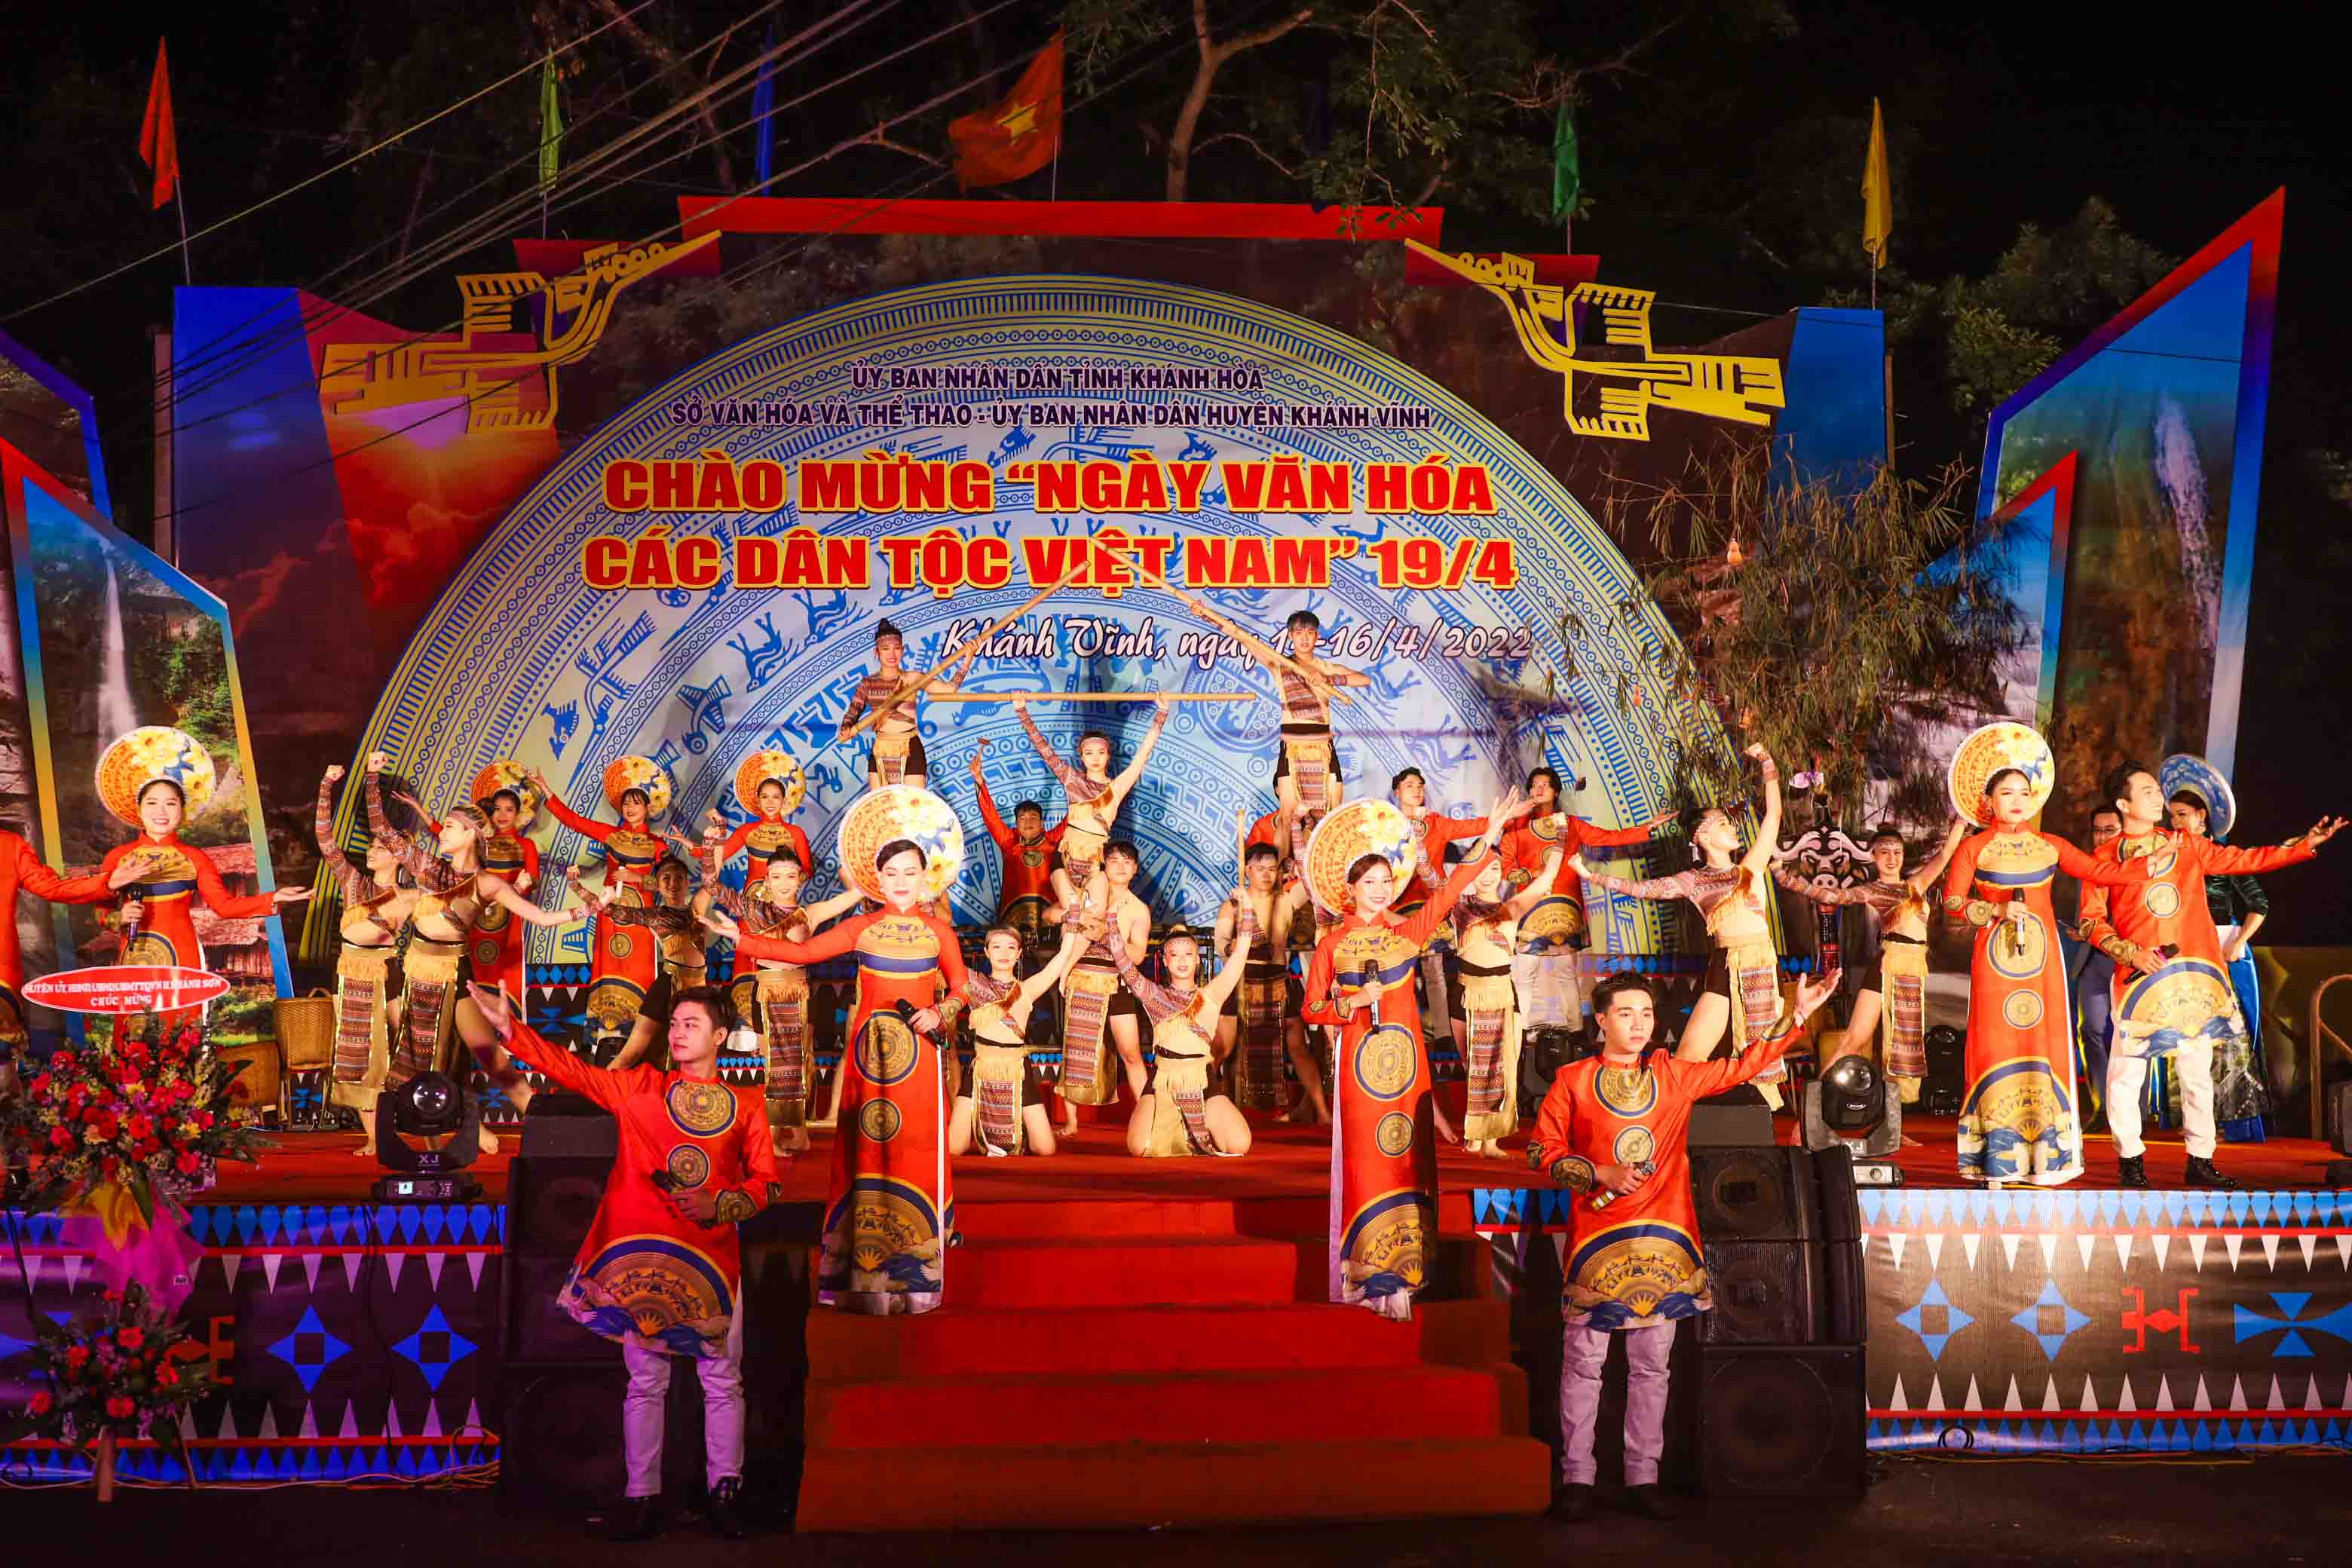 Sôi nổi các hoạt động trong Ngày văn hóa các dân tộc Việt Nam